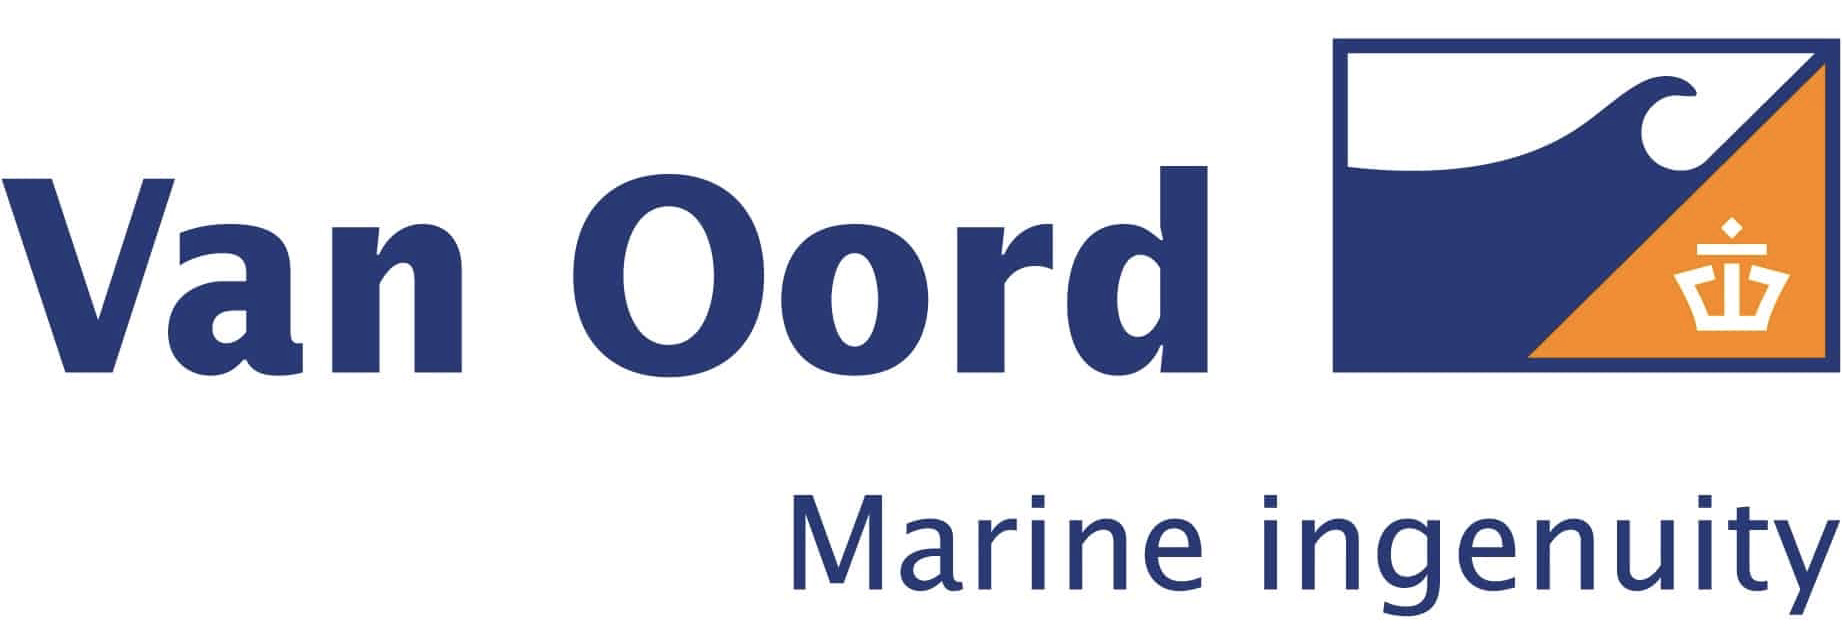 Van Oord Logo